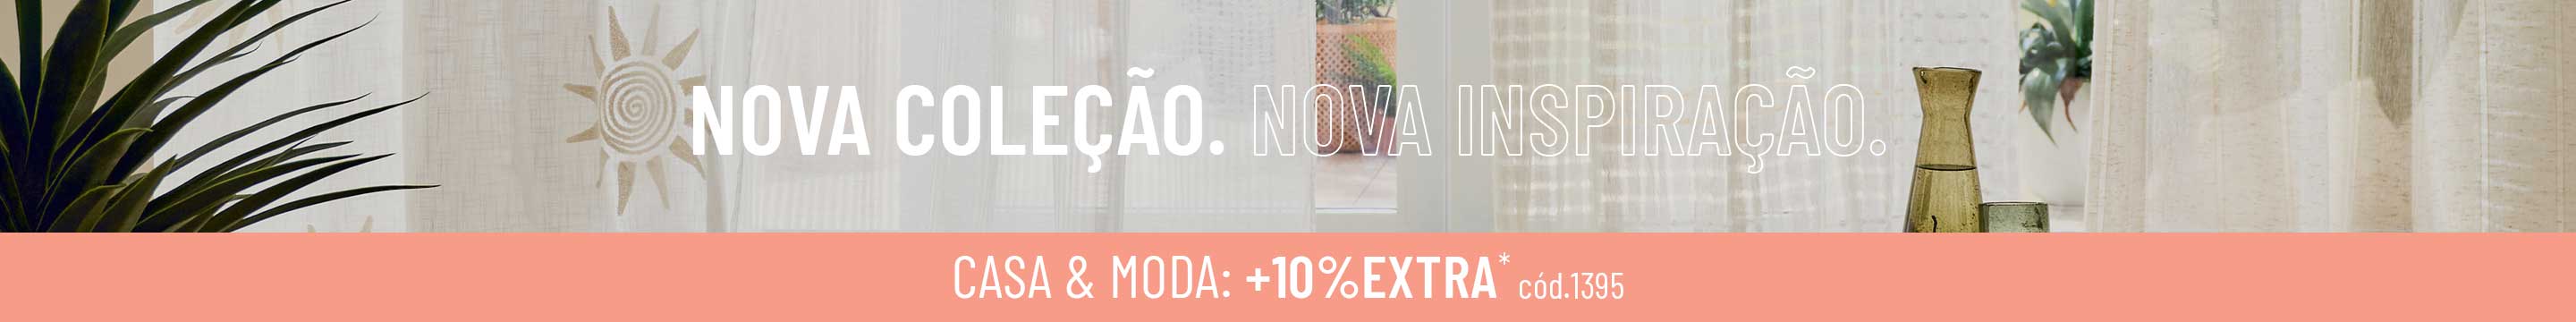 NOVA COLEÇÃO. NOVA INSPIRAÇÃO. | MODA & CASA: +10%EXTRA*